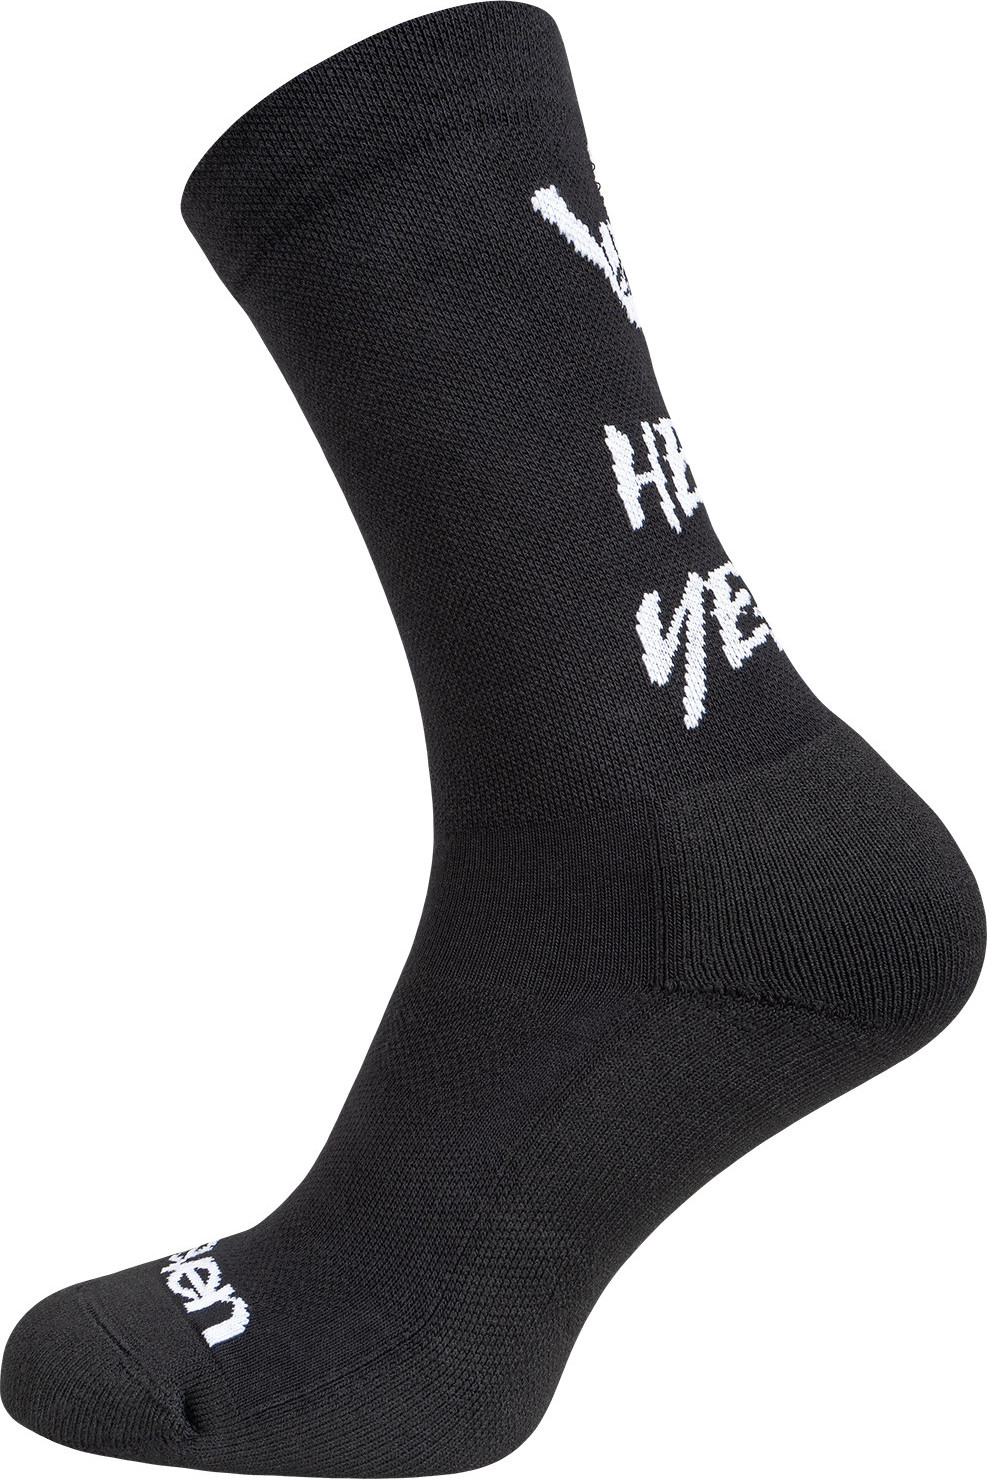 Teplé sportovní ponožky ELEVEN Lara Hell Yeah Velikost: M (39-41)